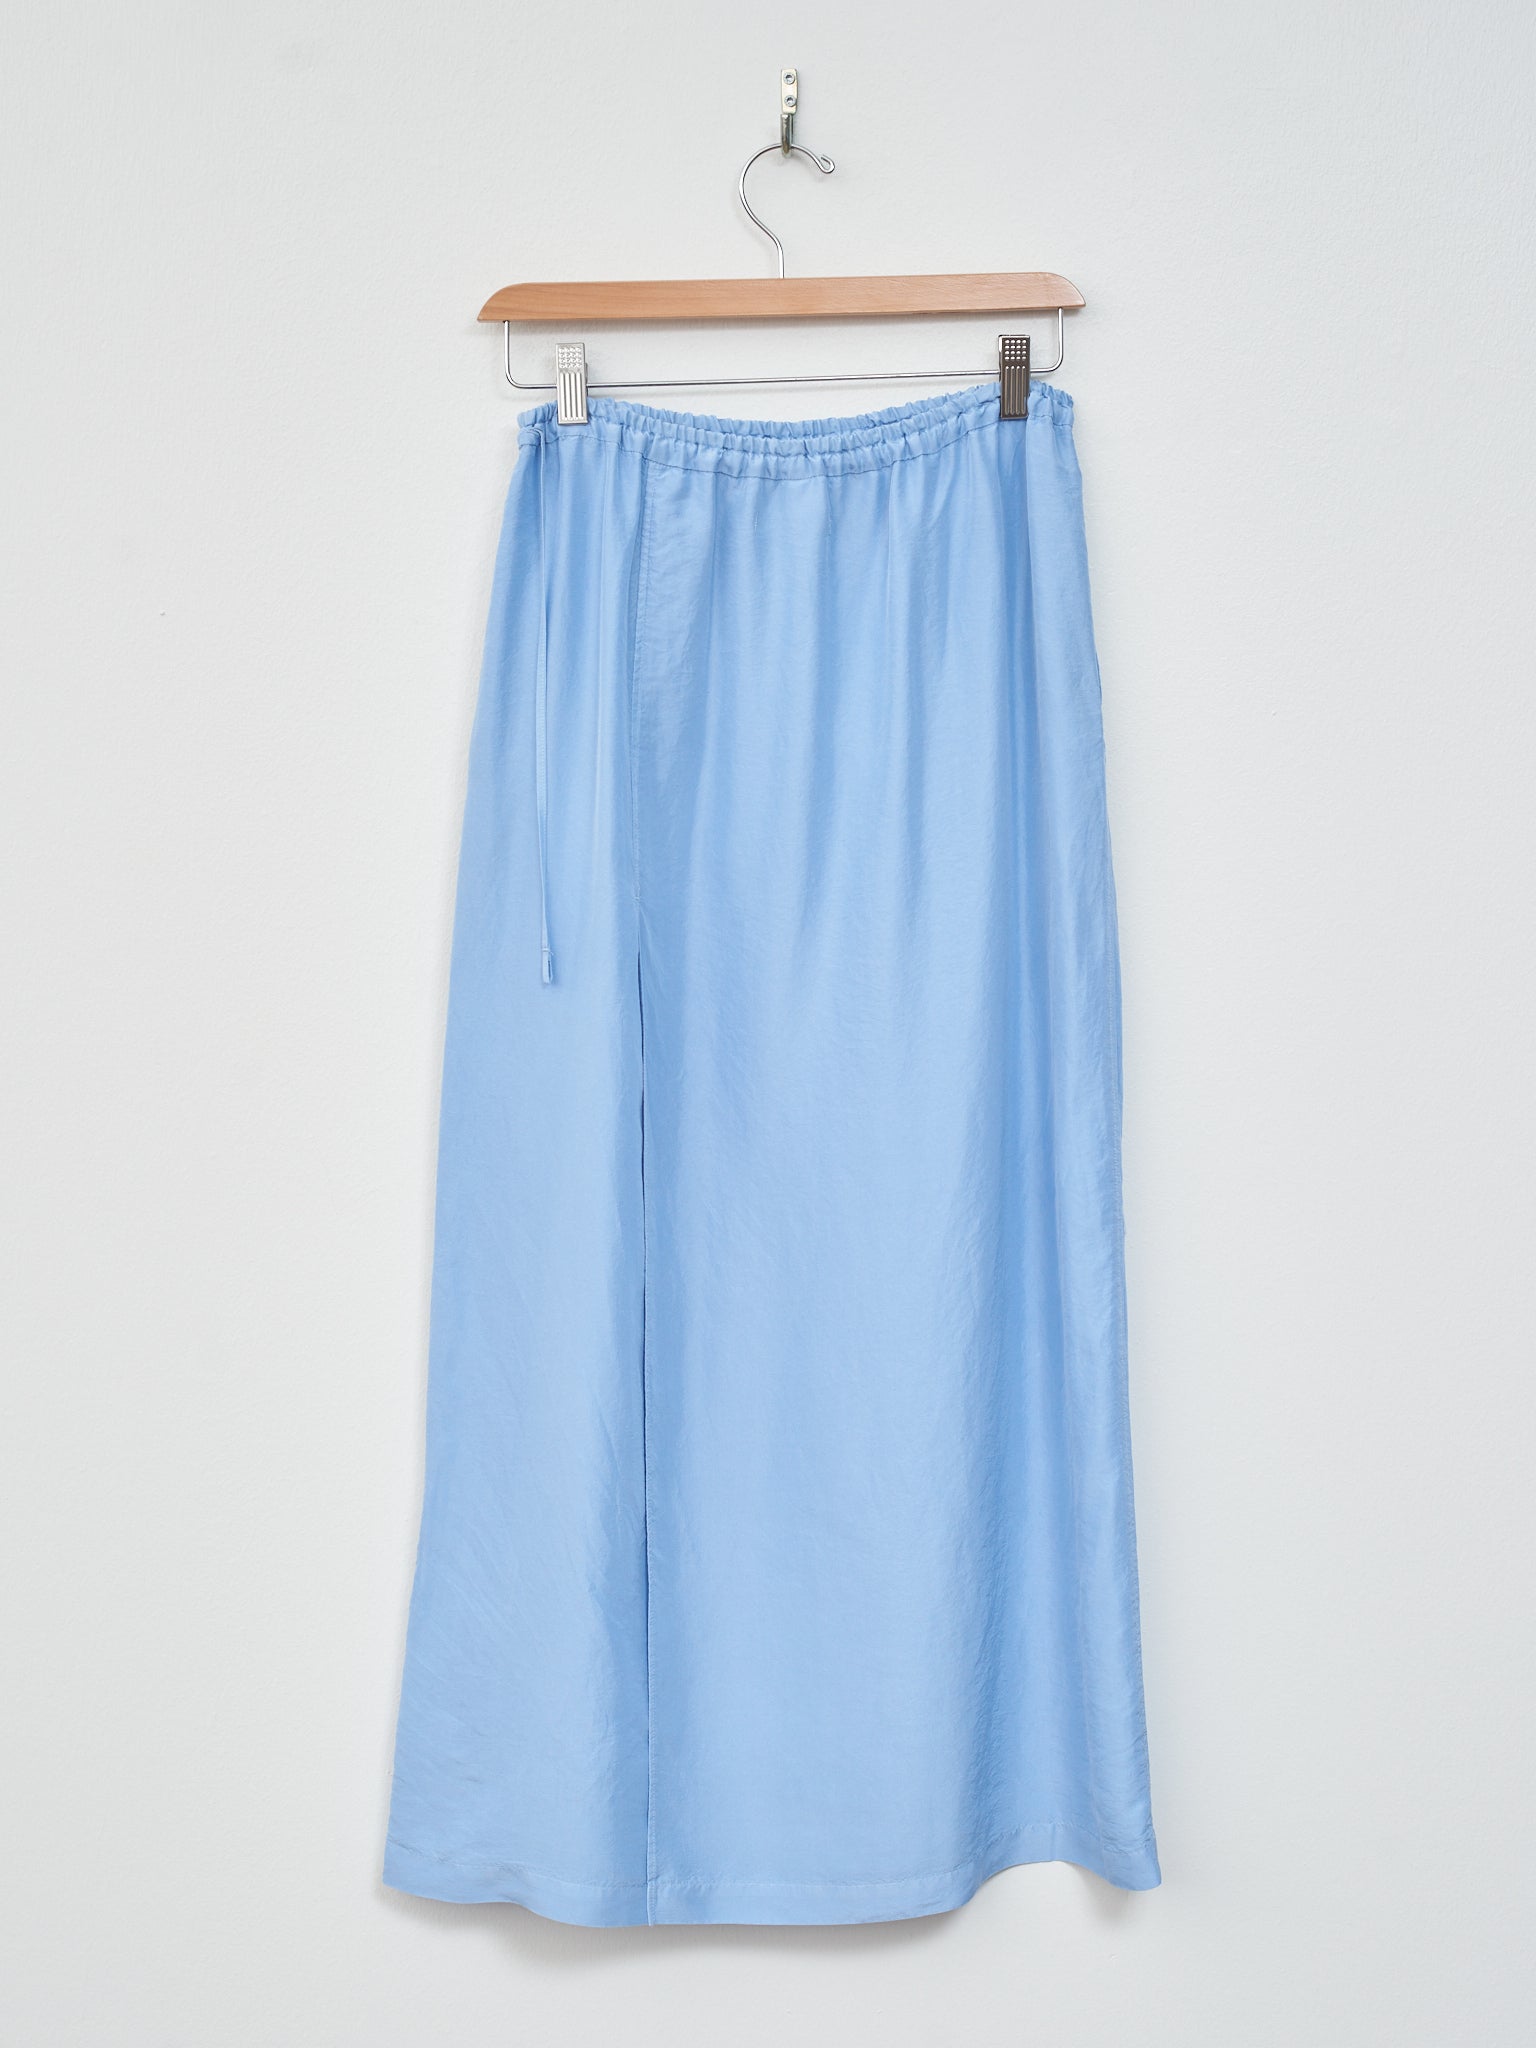 Namu Shop - Unfil Silk Habotai Maxi Skirt - Sax Blue